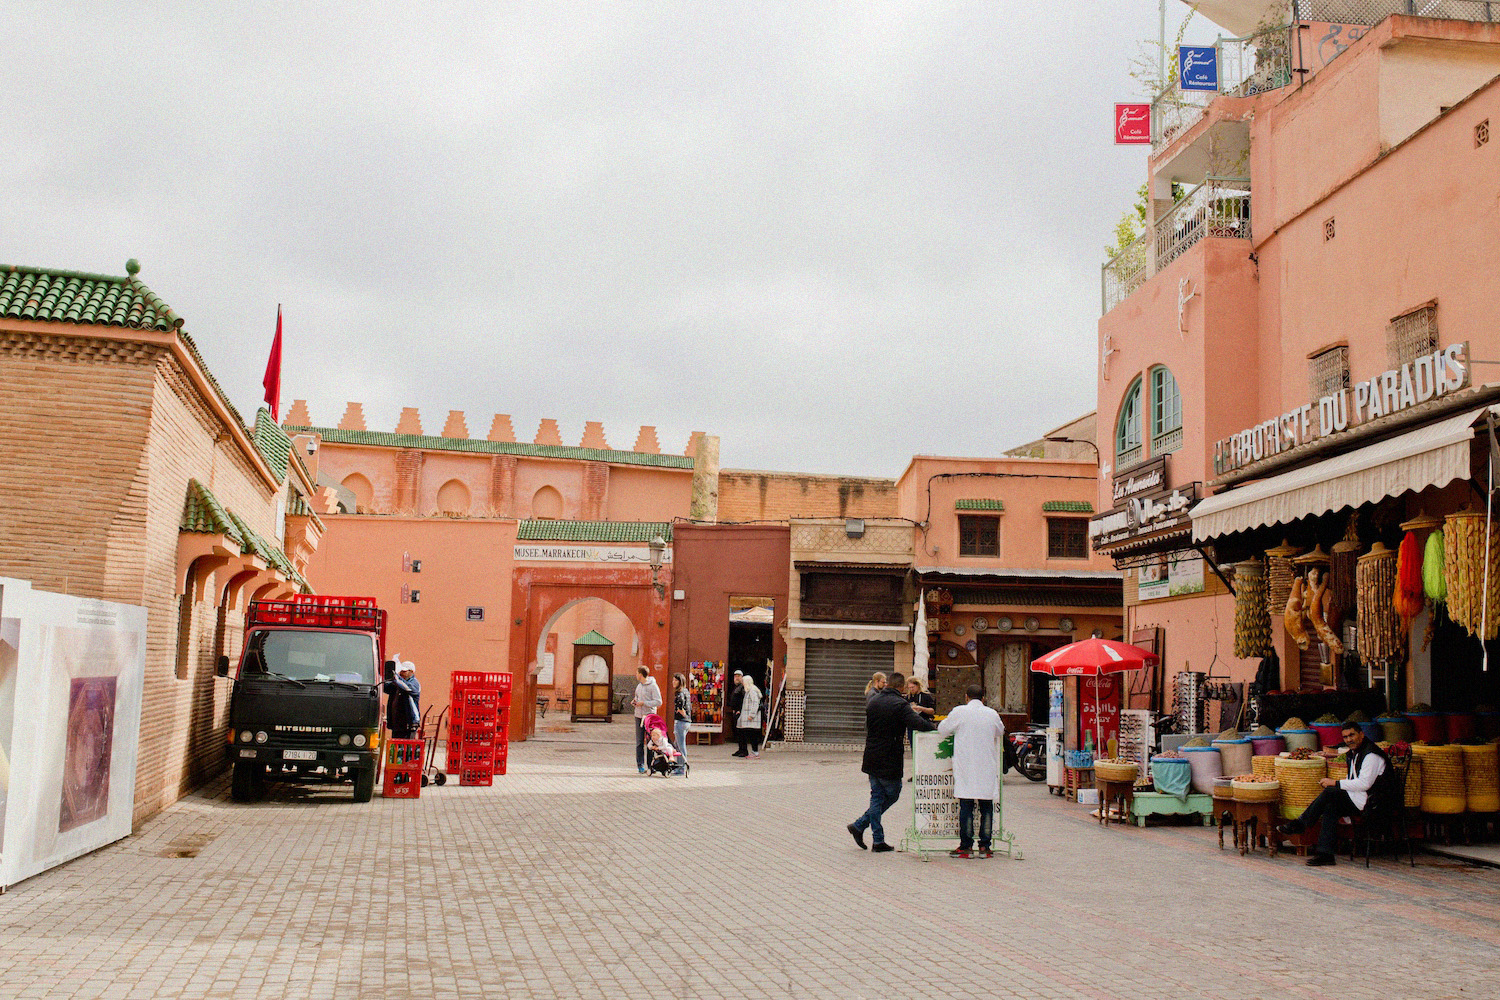 www.thegoldenbun.com | Second visit Marrakesh travel trip // Reisetipps Marrakesch Aktivitäten